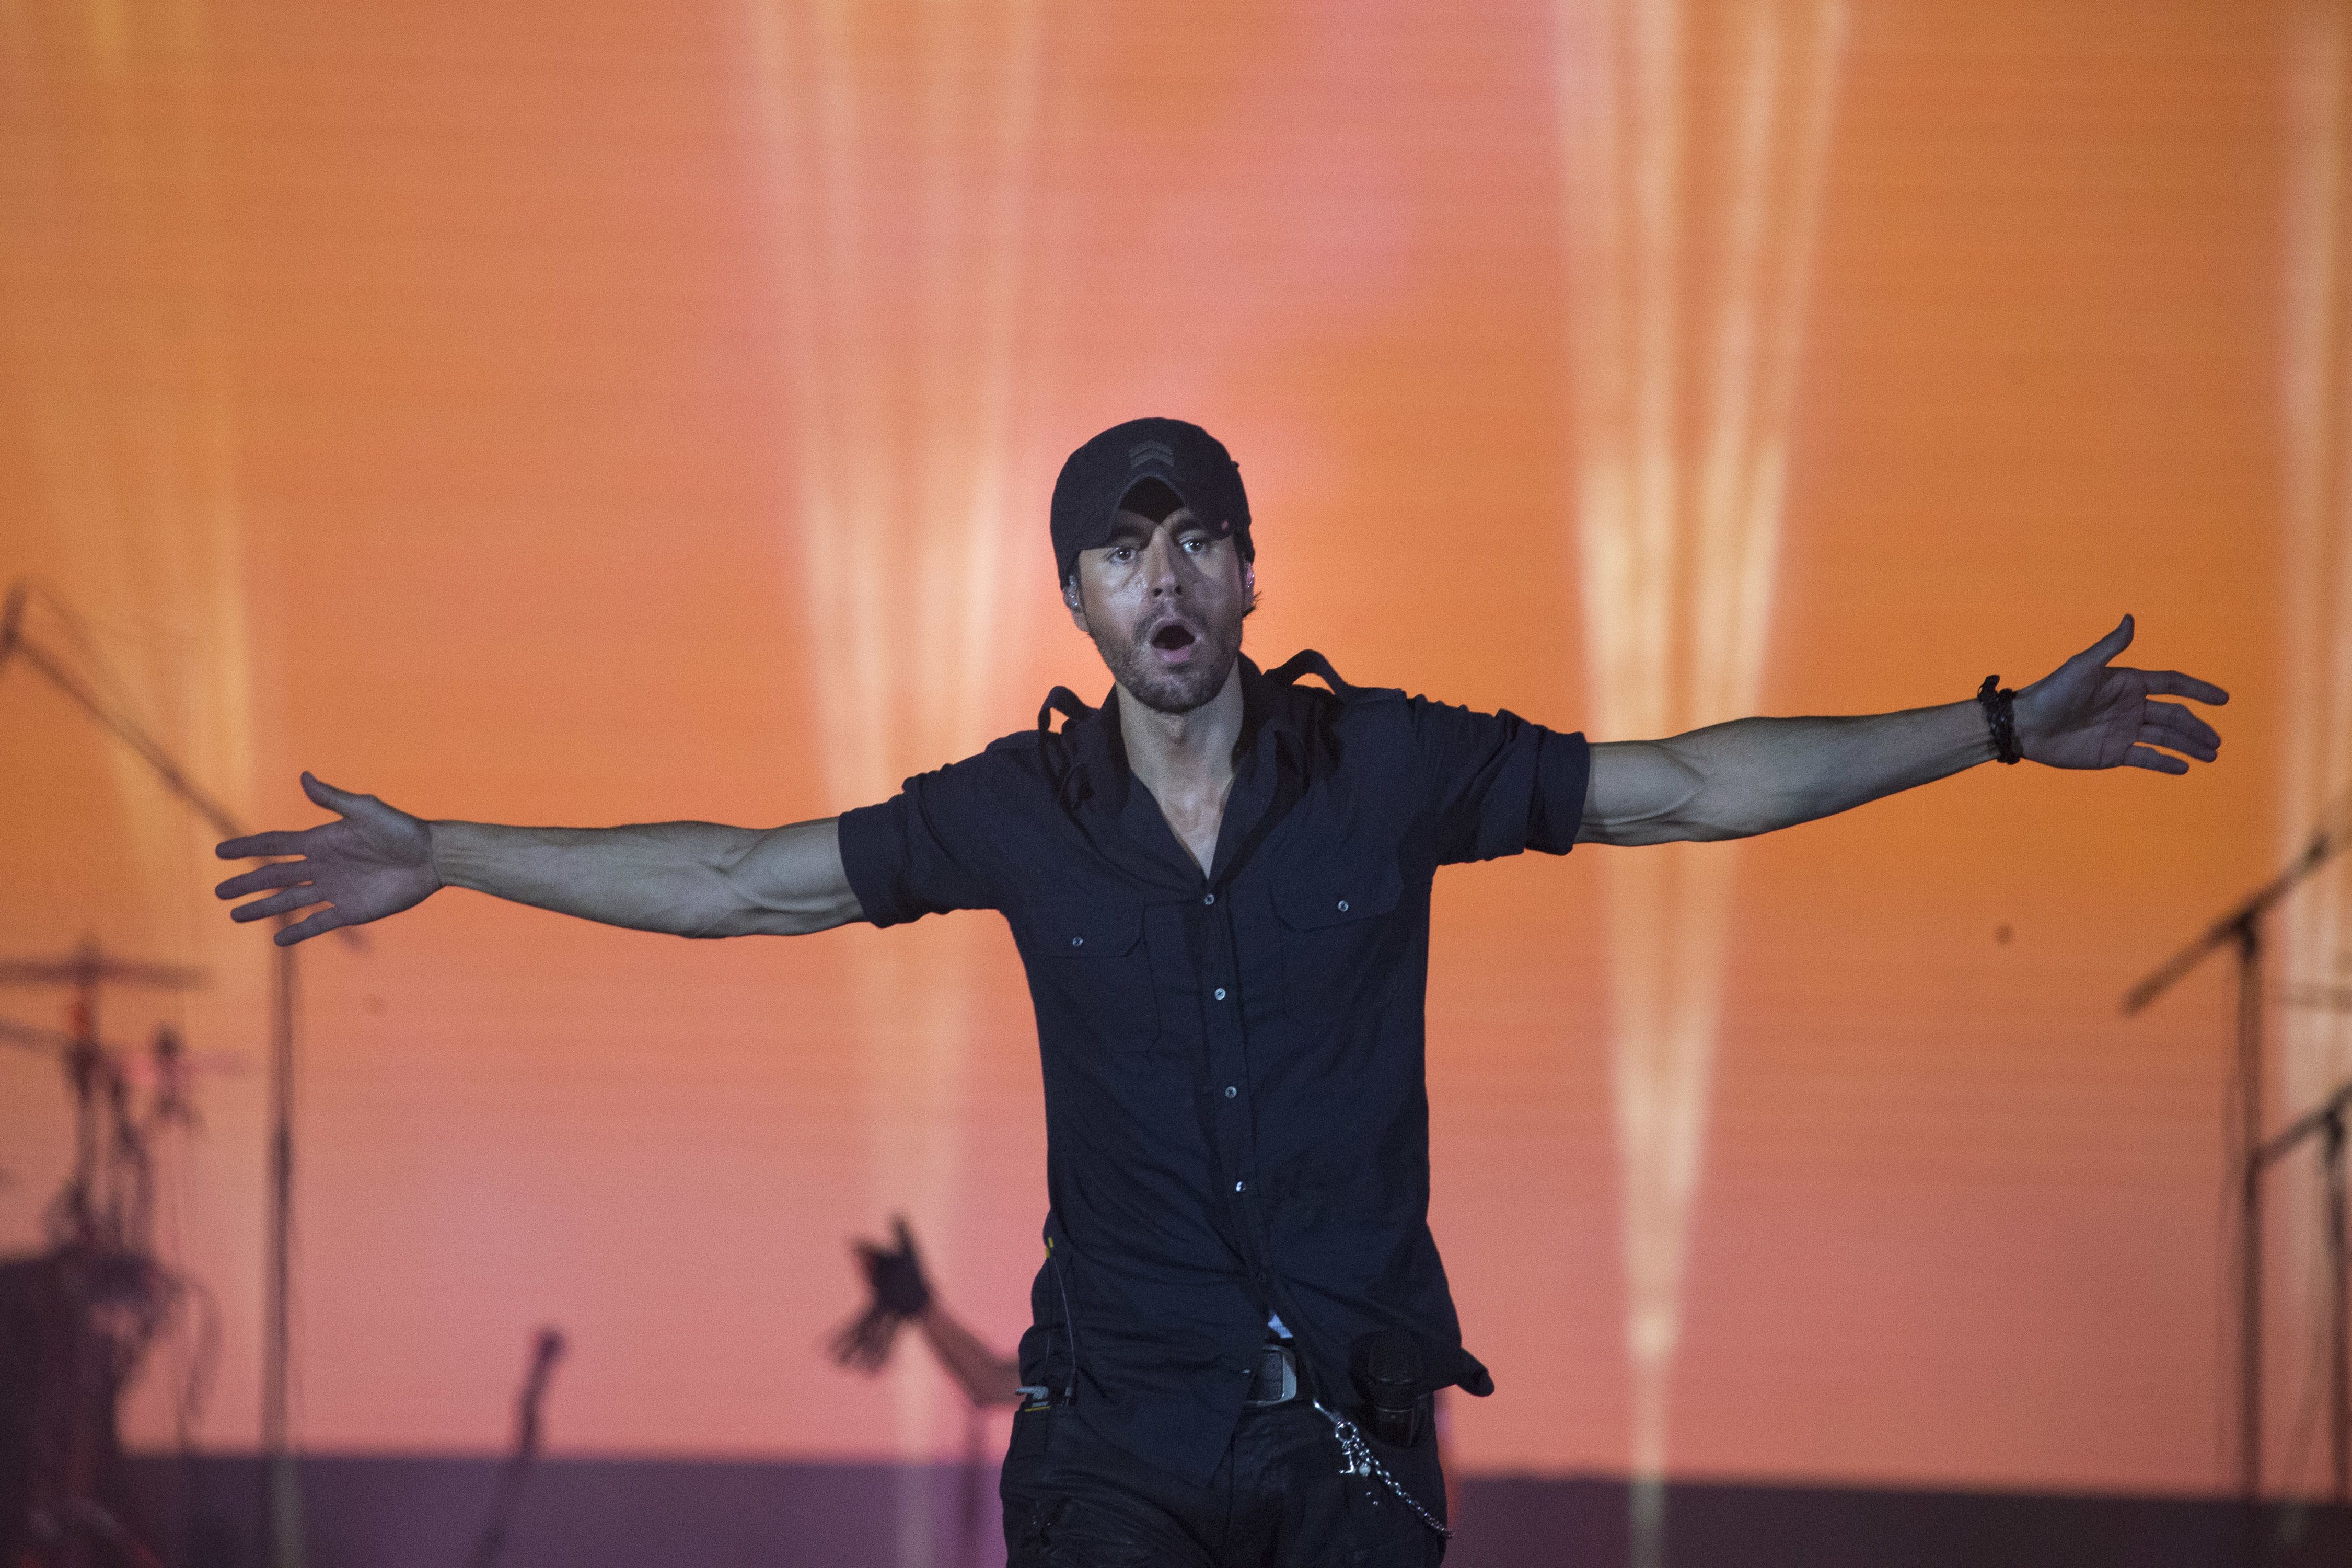 ARCHIVO - Enrique Iglesias durante un concierto en Tel Aviv, Israel, el 27 de mayo de 2018. Iglesias dijo el 9 de septiembre de 2021 que lanzará su álbum "Final" el 17 de septiembre.(Foto AP/Ariel Schalit, archivo)